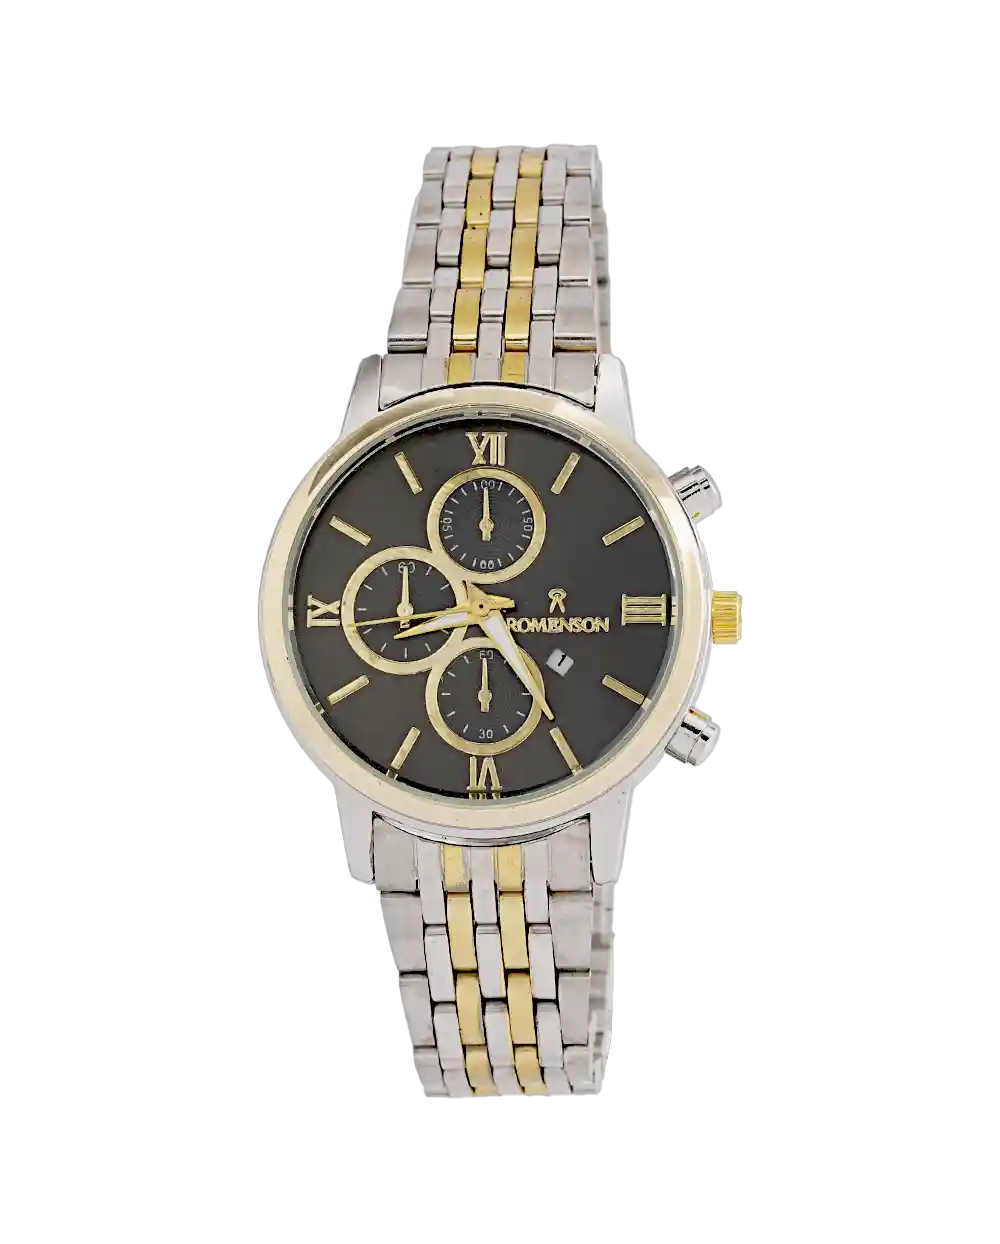 خرید ساعت مچی زنانه رومانسون ROMANSON مدل 1971 بند استیل رنگ ثابت نقره ای طلایی با صفحه مشکی بهترین قیمت به همراه ارسال رایگان و جعبه